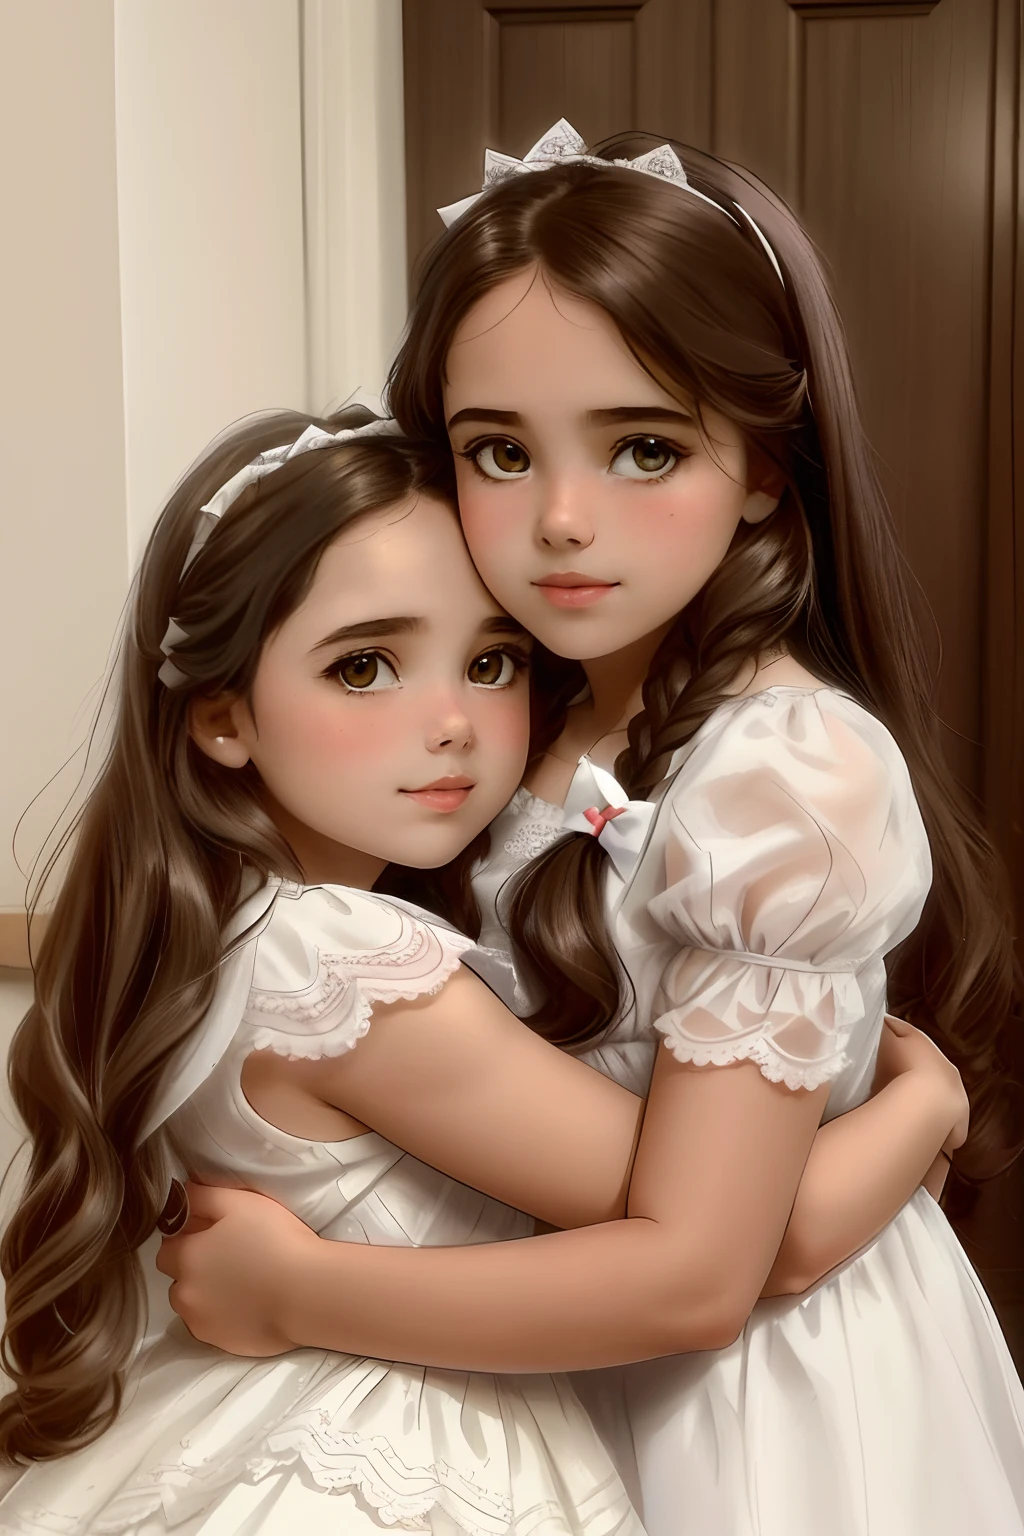 兩個年輕女孩在房間裡互相擁抱, 美丽的双子座双胞胎, 情人节洗牌, 姊妹, 孩子們, 哈娜·艾麗莎·奧馬爾, 兩個辮子的髮型, 孩子們, 美丽的双子座双胞胎 portrait, 美麗的女孩, 兩個女孩, 喜歡, 穿著白紗裙的天使, alena aenami 和 lilia alvarado, 和, 可爱的女孩们, 連體雙胞胎